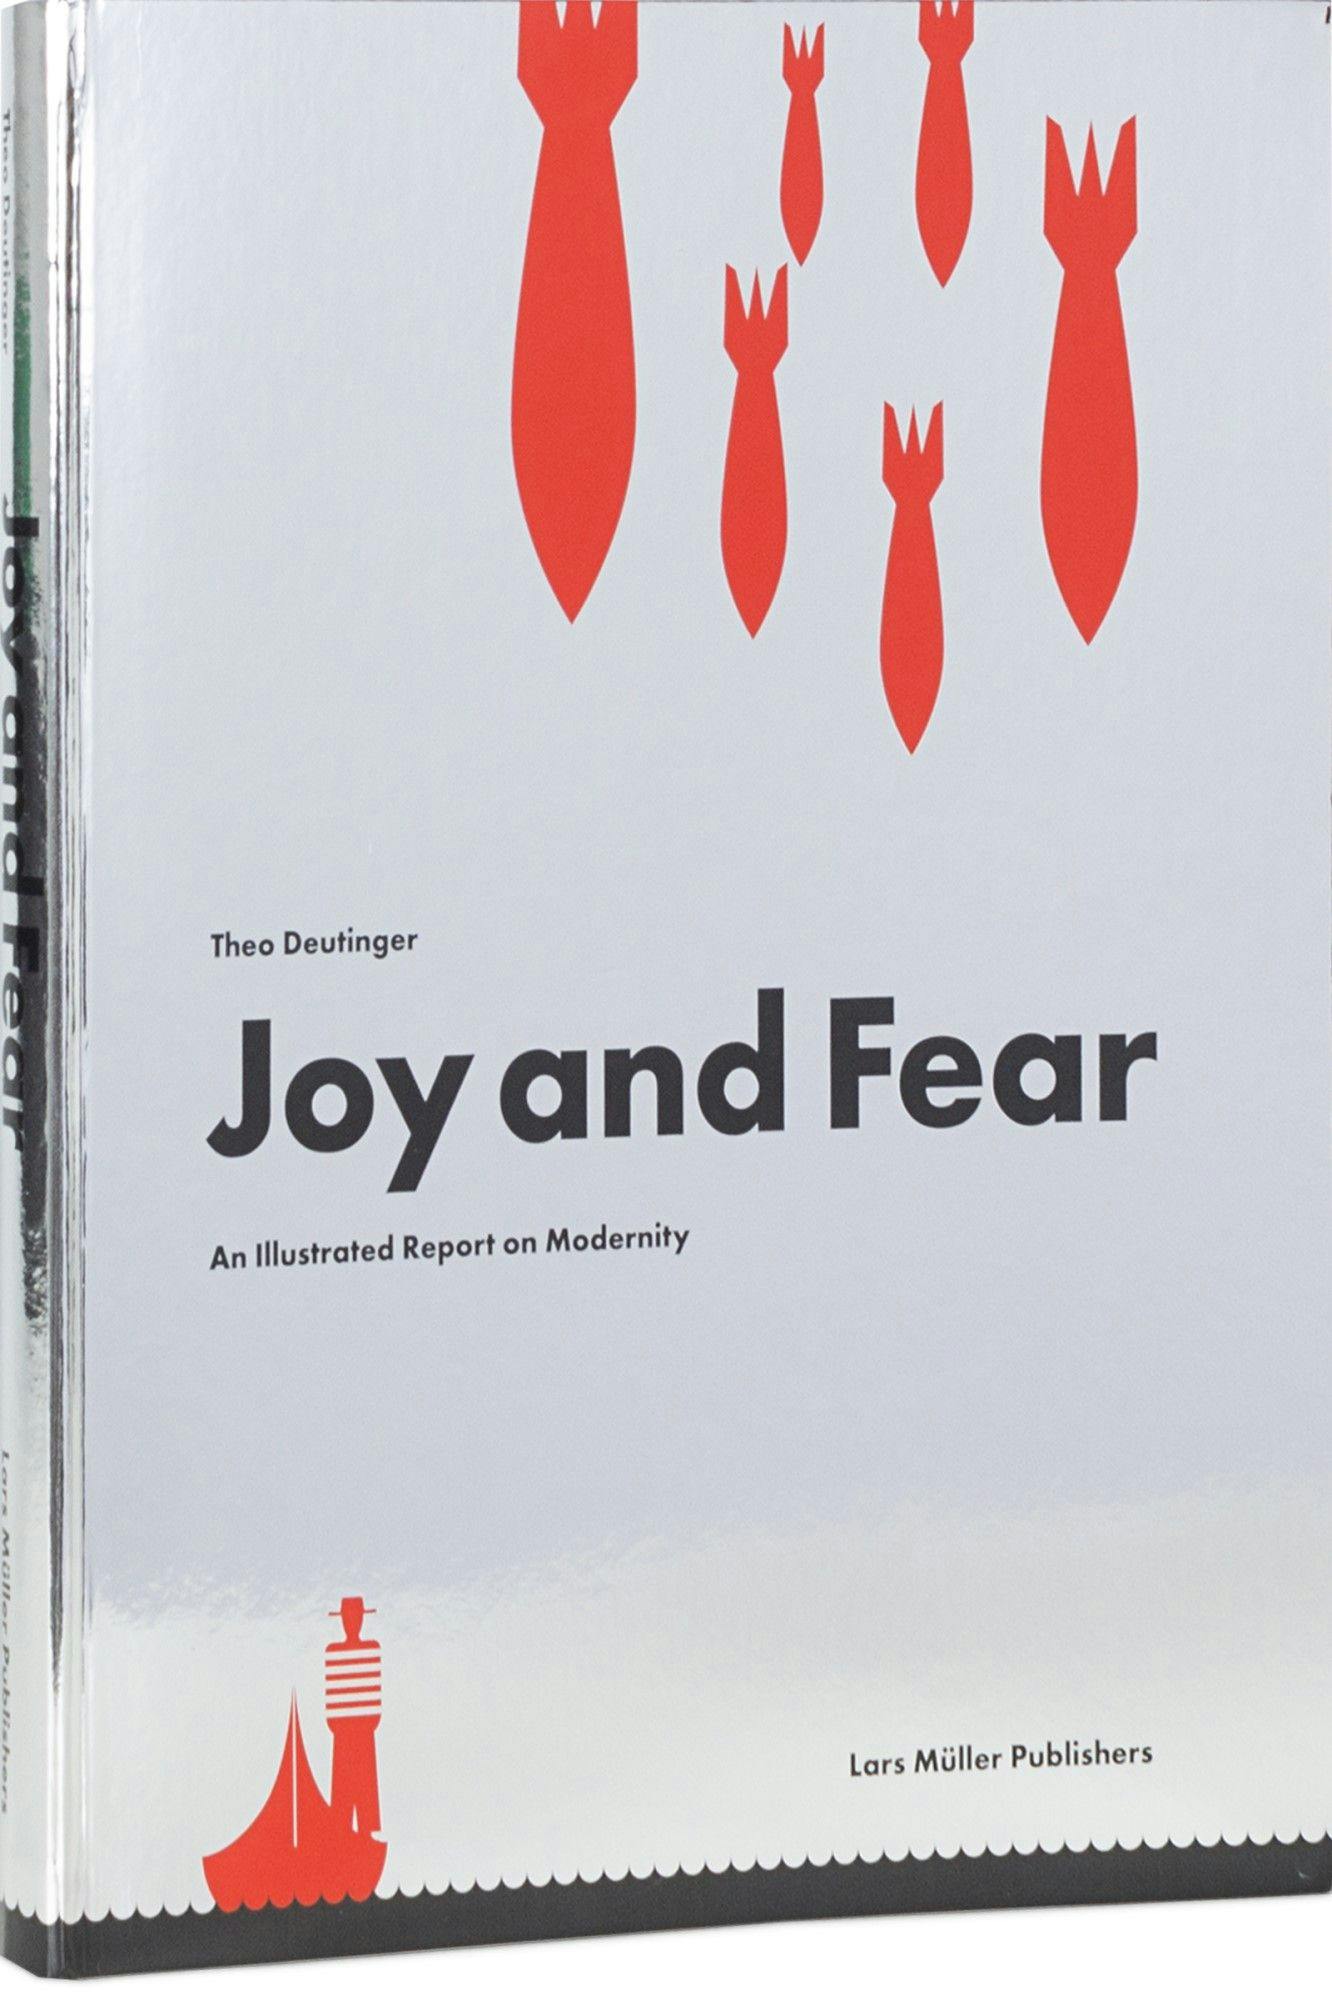 Boekomslag van het boek Joy and Fear, grotendeels zilveren omslag met wat kleine rode figuren.